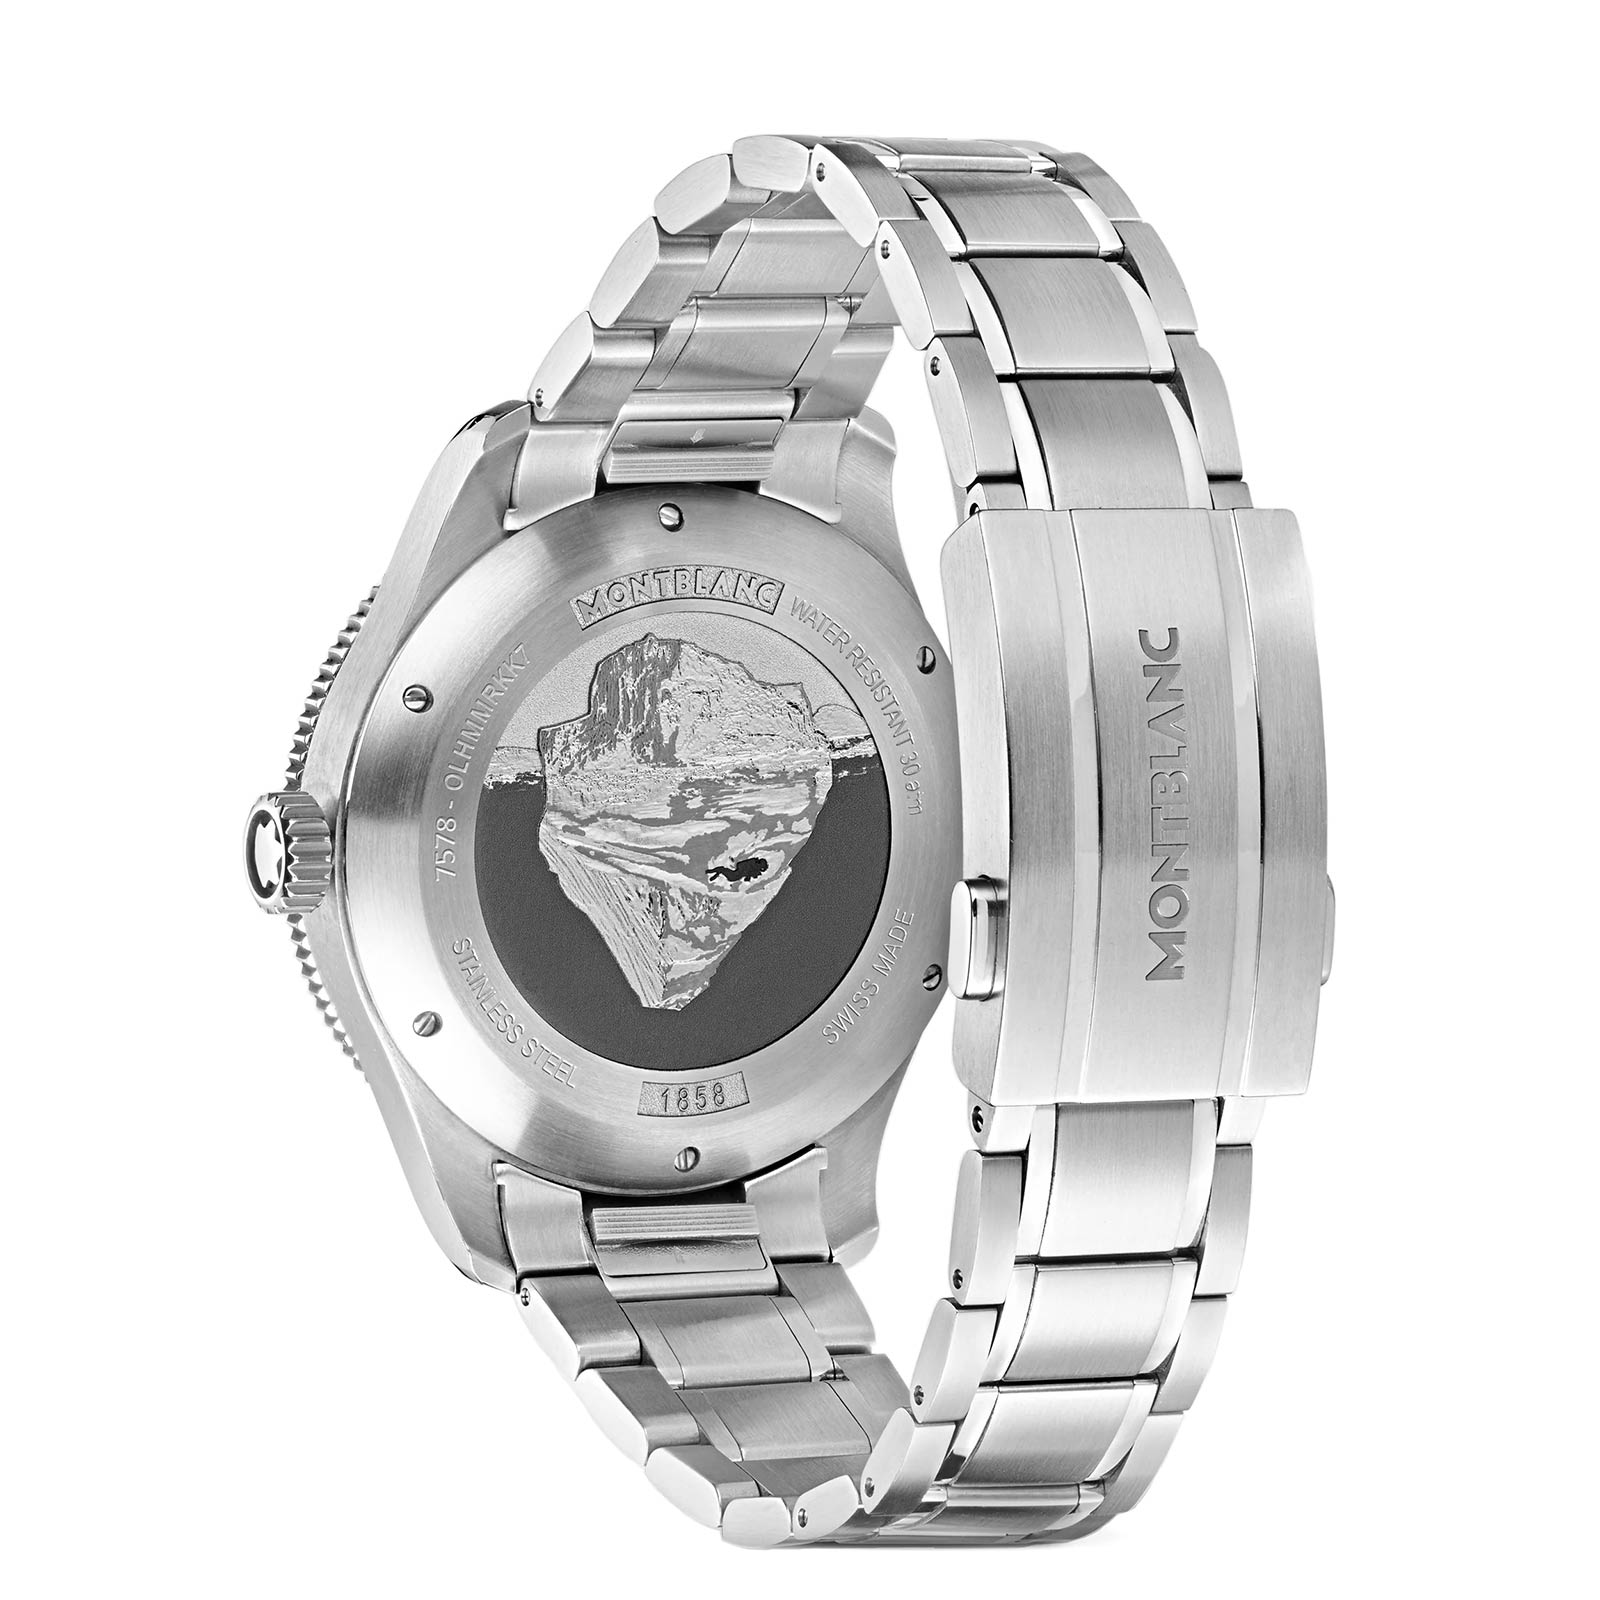 Montblanc 1858 Ice Sea 129369 - Gioielleria Casavola di Noci - orologio automatico svizzero sportivo subacqueo - idee regalo compleanno marito 50 anni - bracciale acciaio INOX